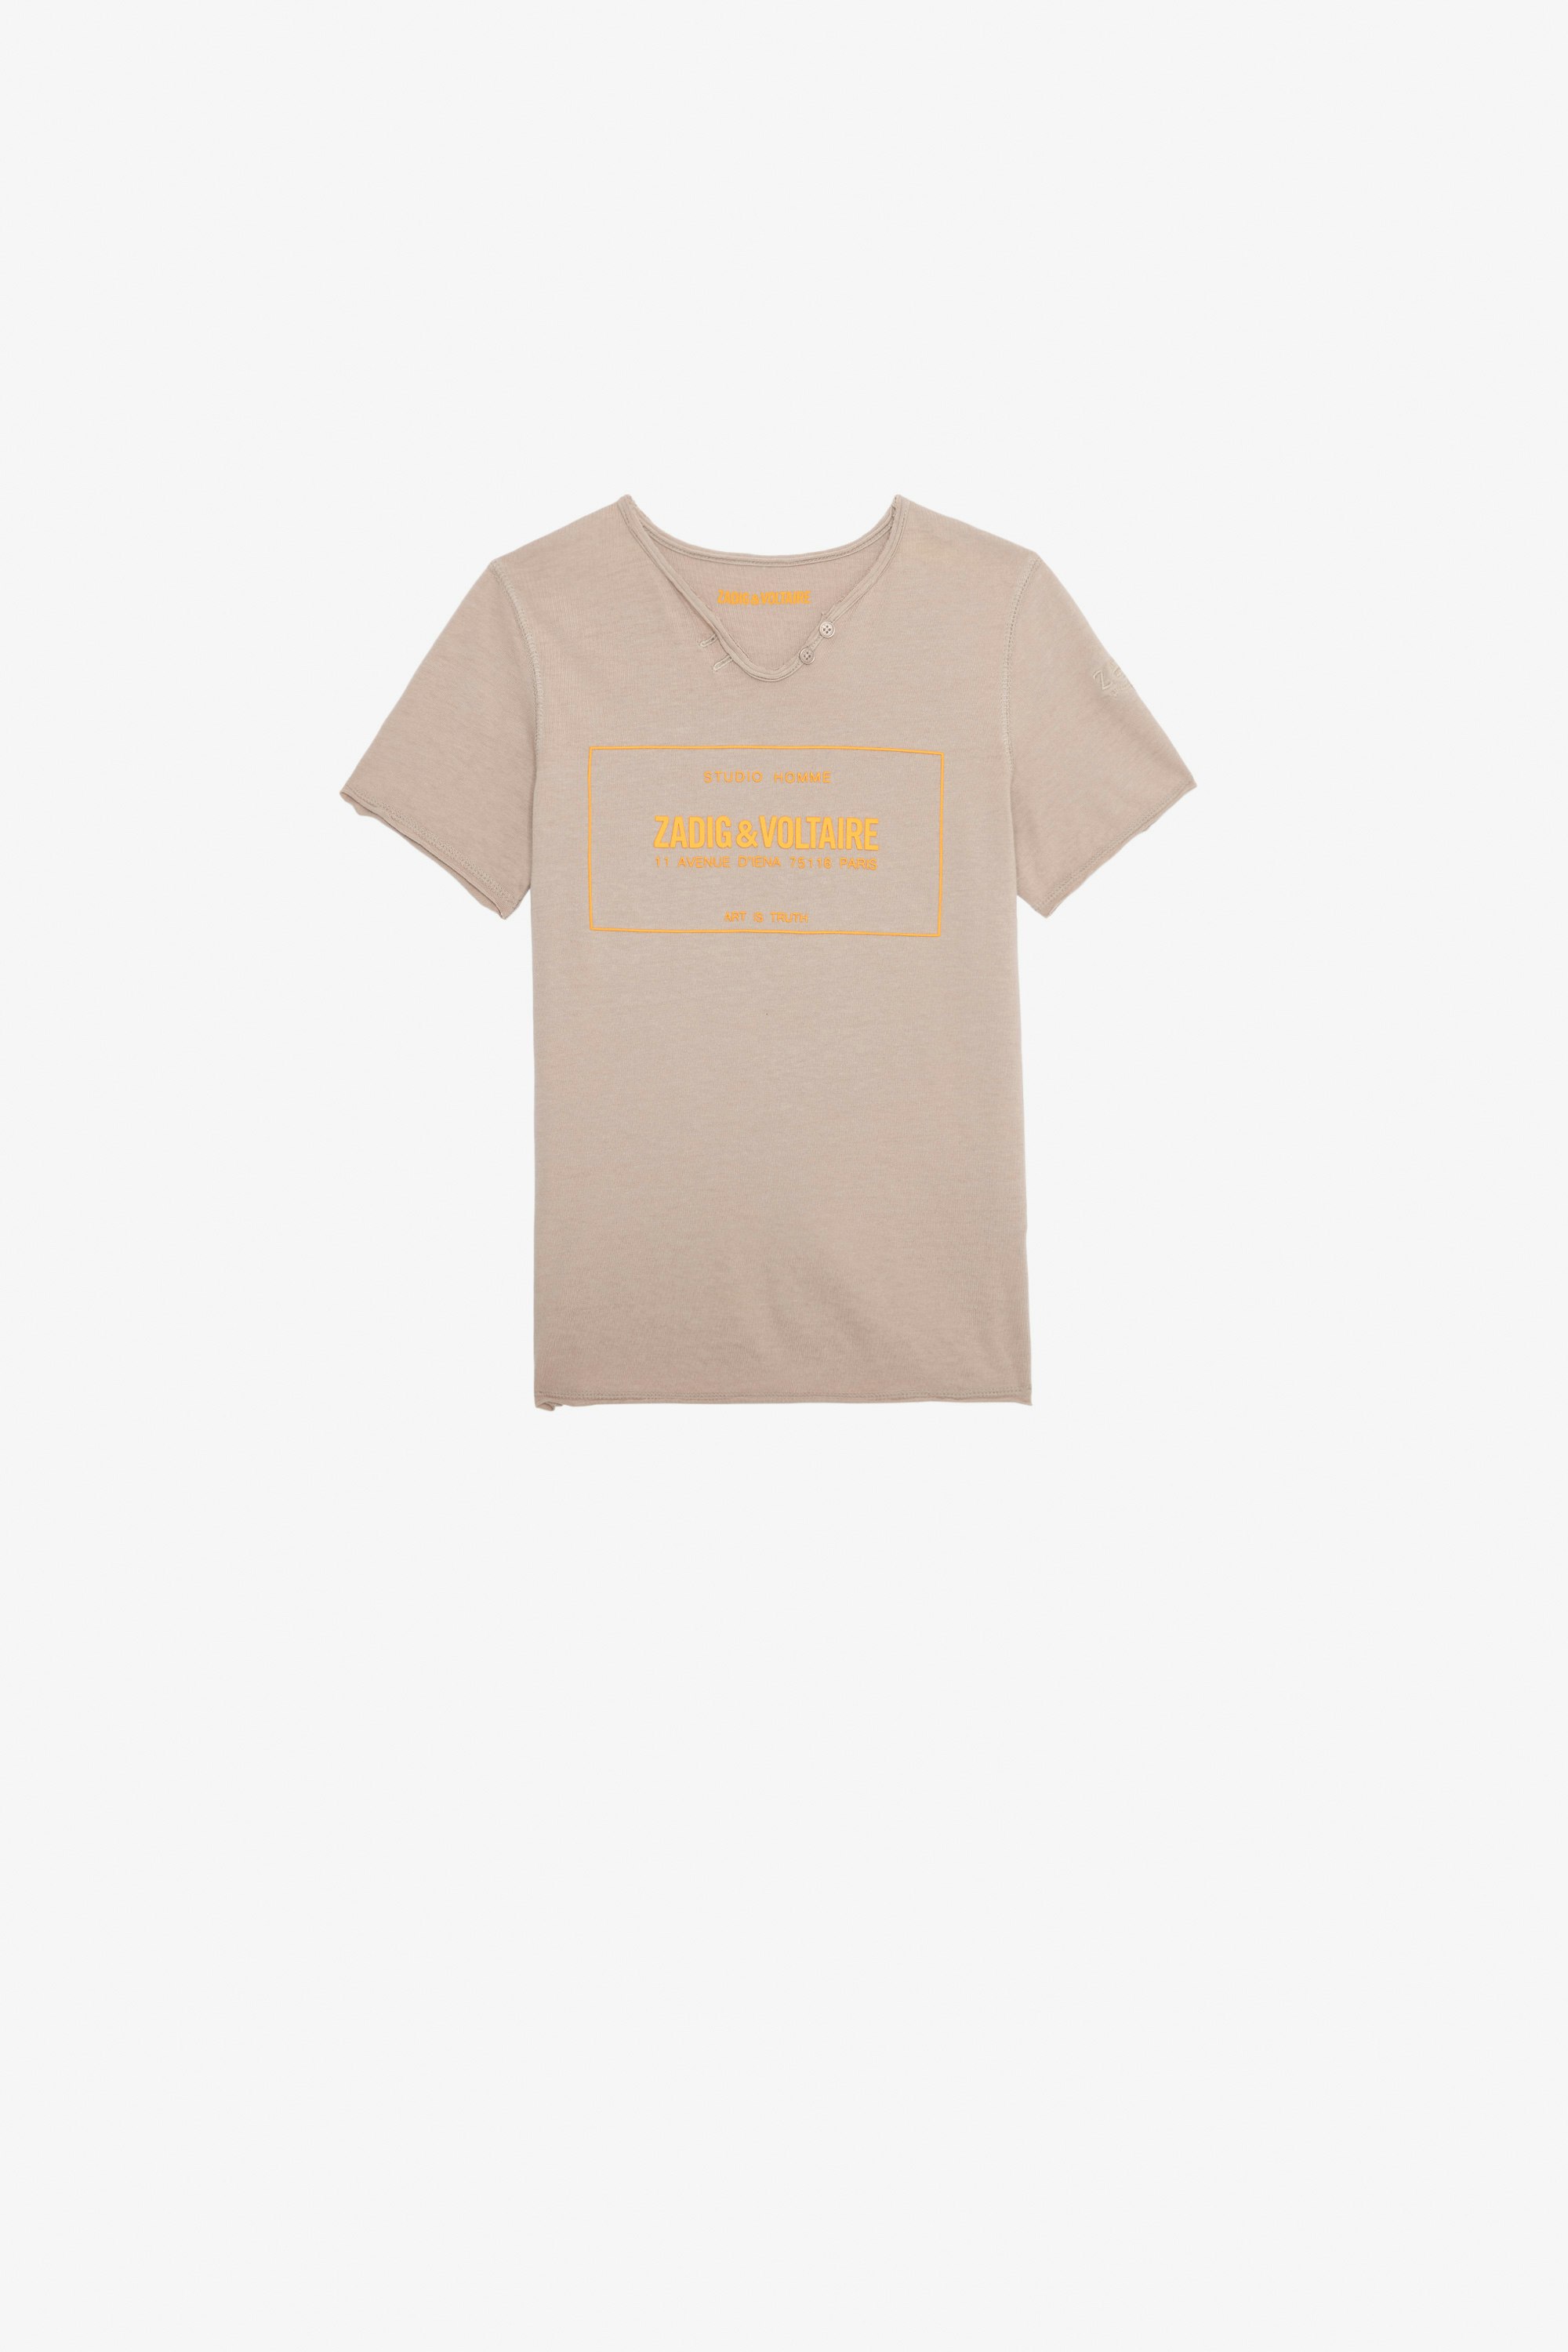 T-shirt Boxer Bambino T-shirt a maniche corte in jersey di cotone beige con stemma Studio da bambino.